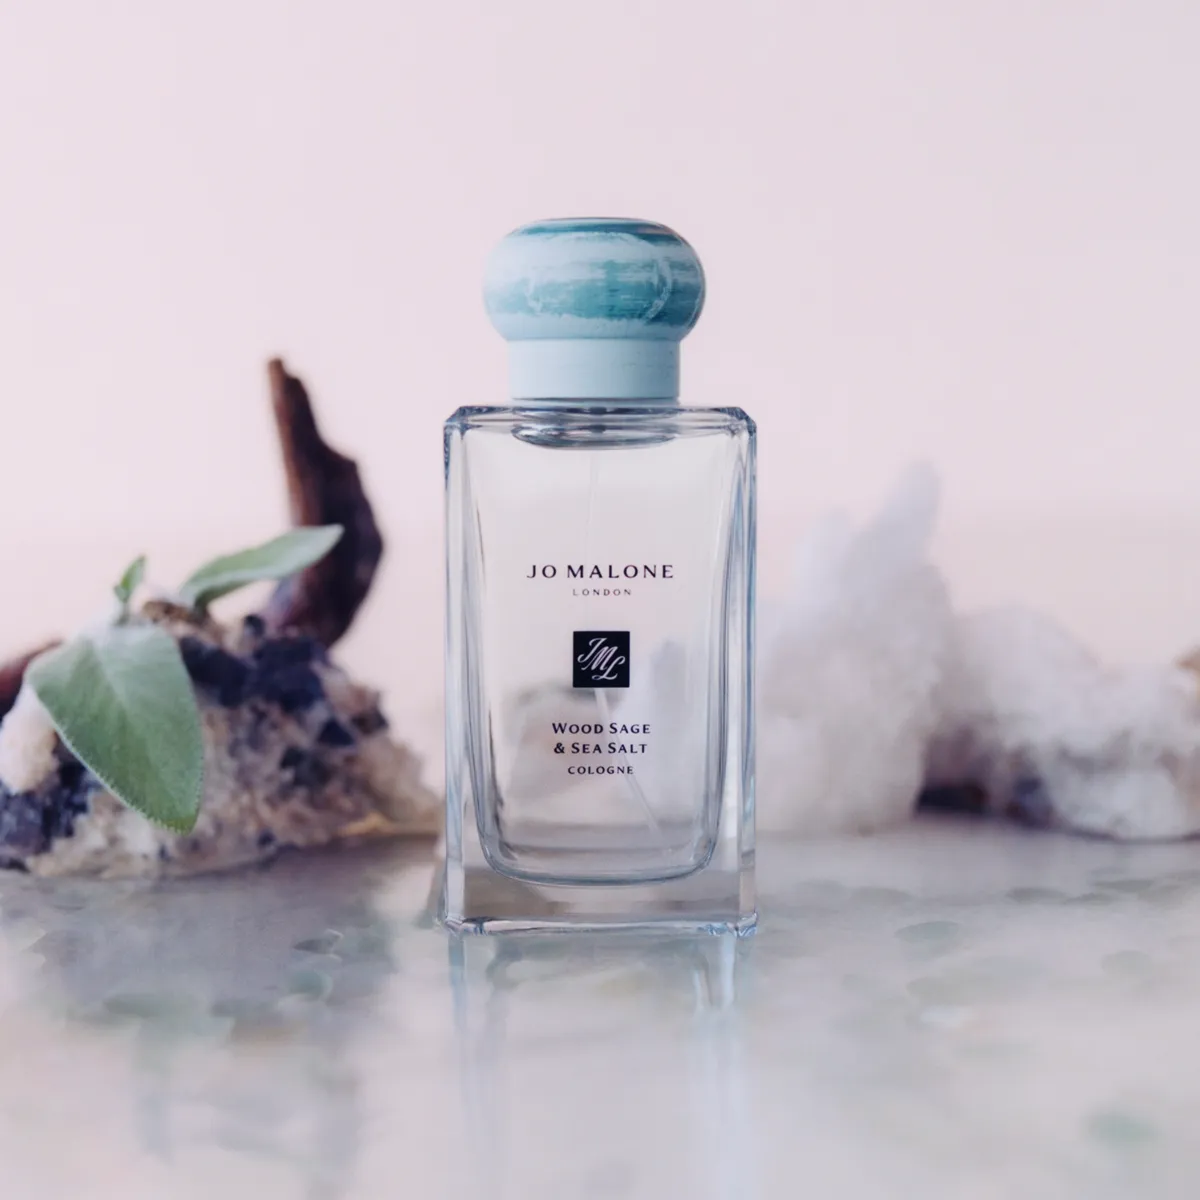 Jo Malone London Wood Sage & Sea Salt Die besten Aquatic & Oceanic Parfums